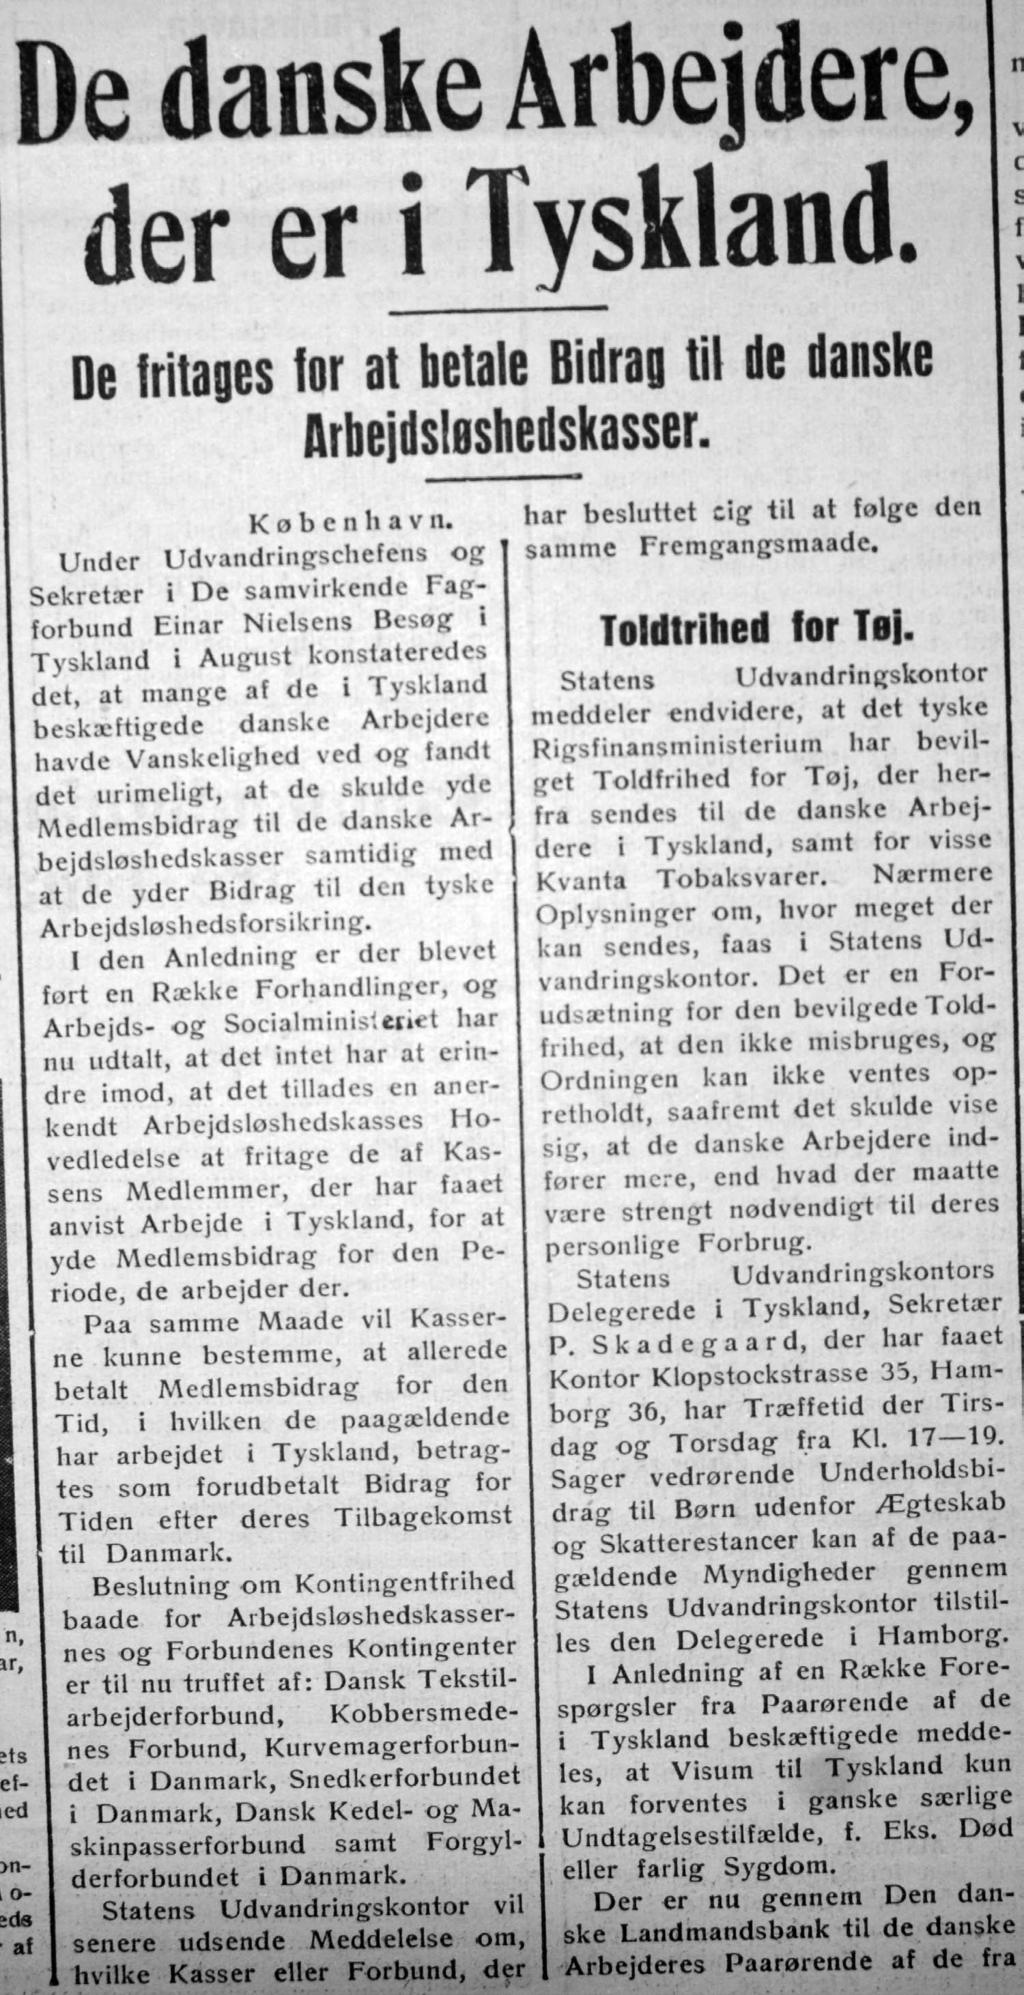 Avisartikel fra besættelsen om tysklandsarbejdere, hvor det meddeles, de blev fritaget